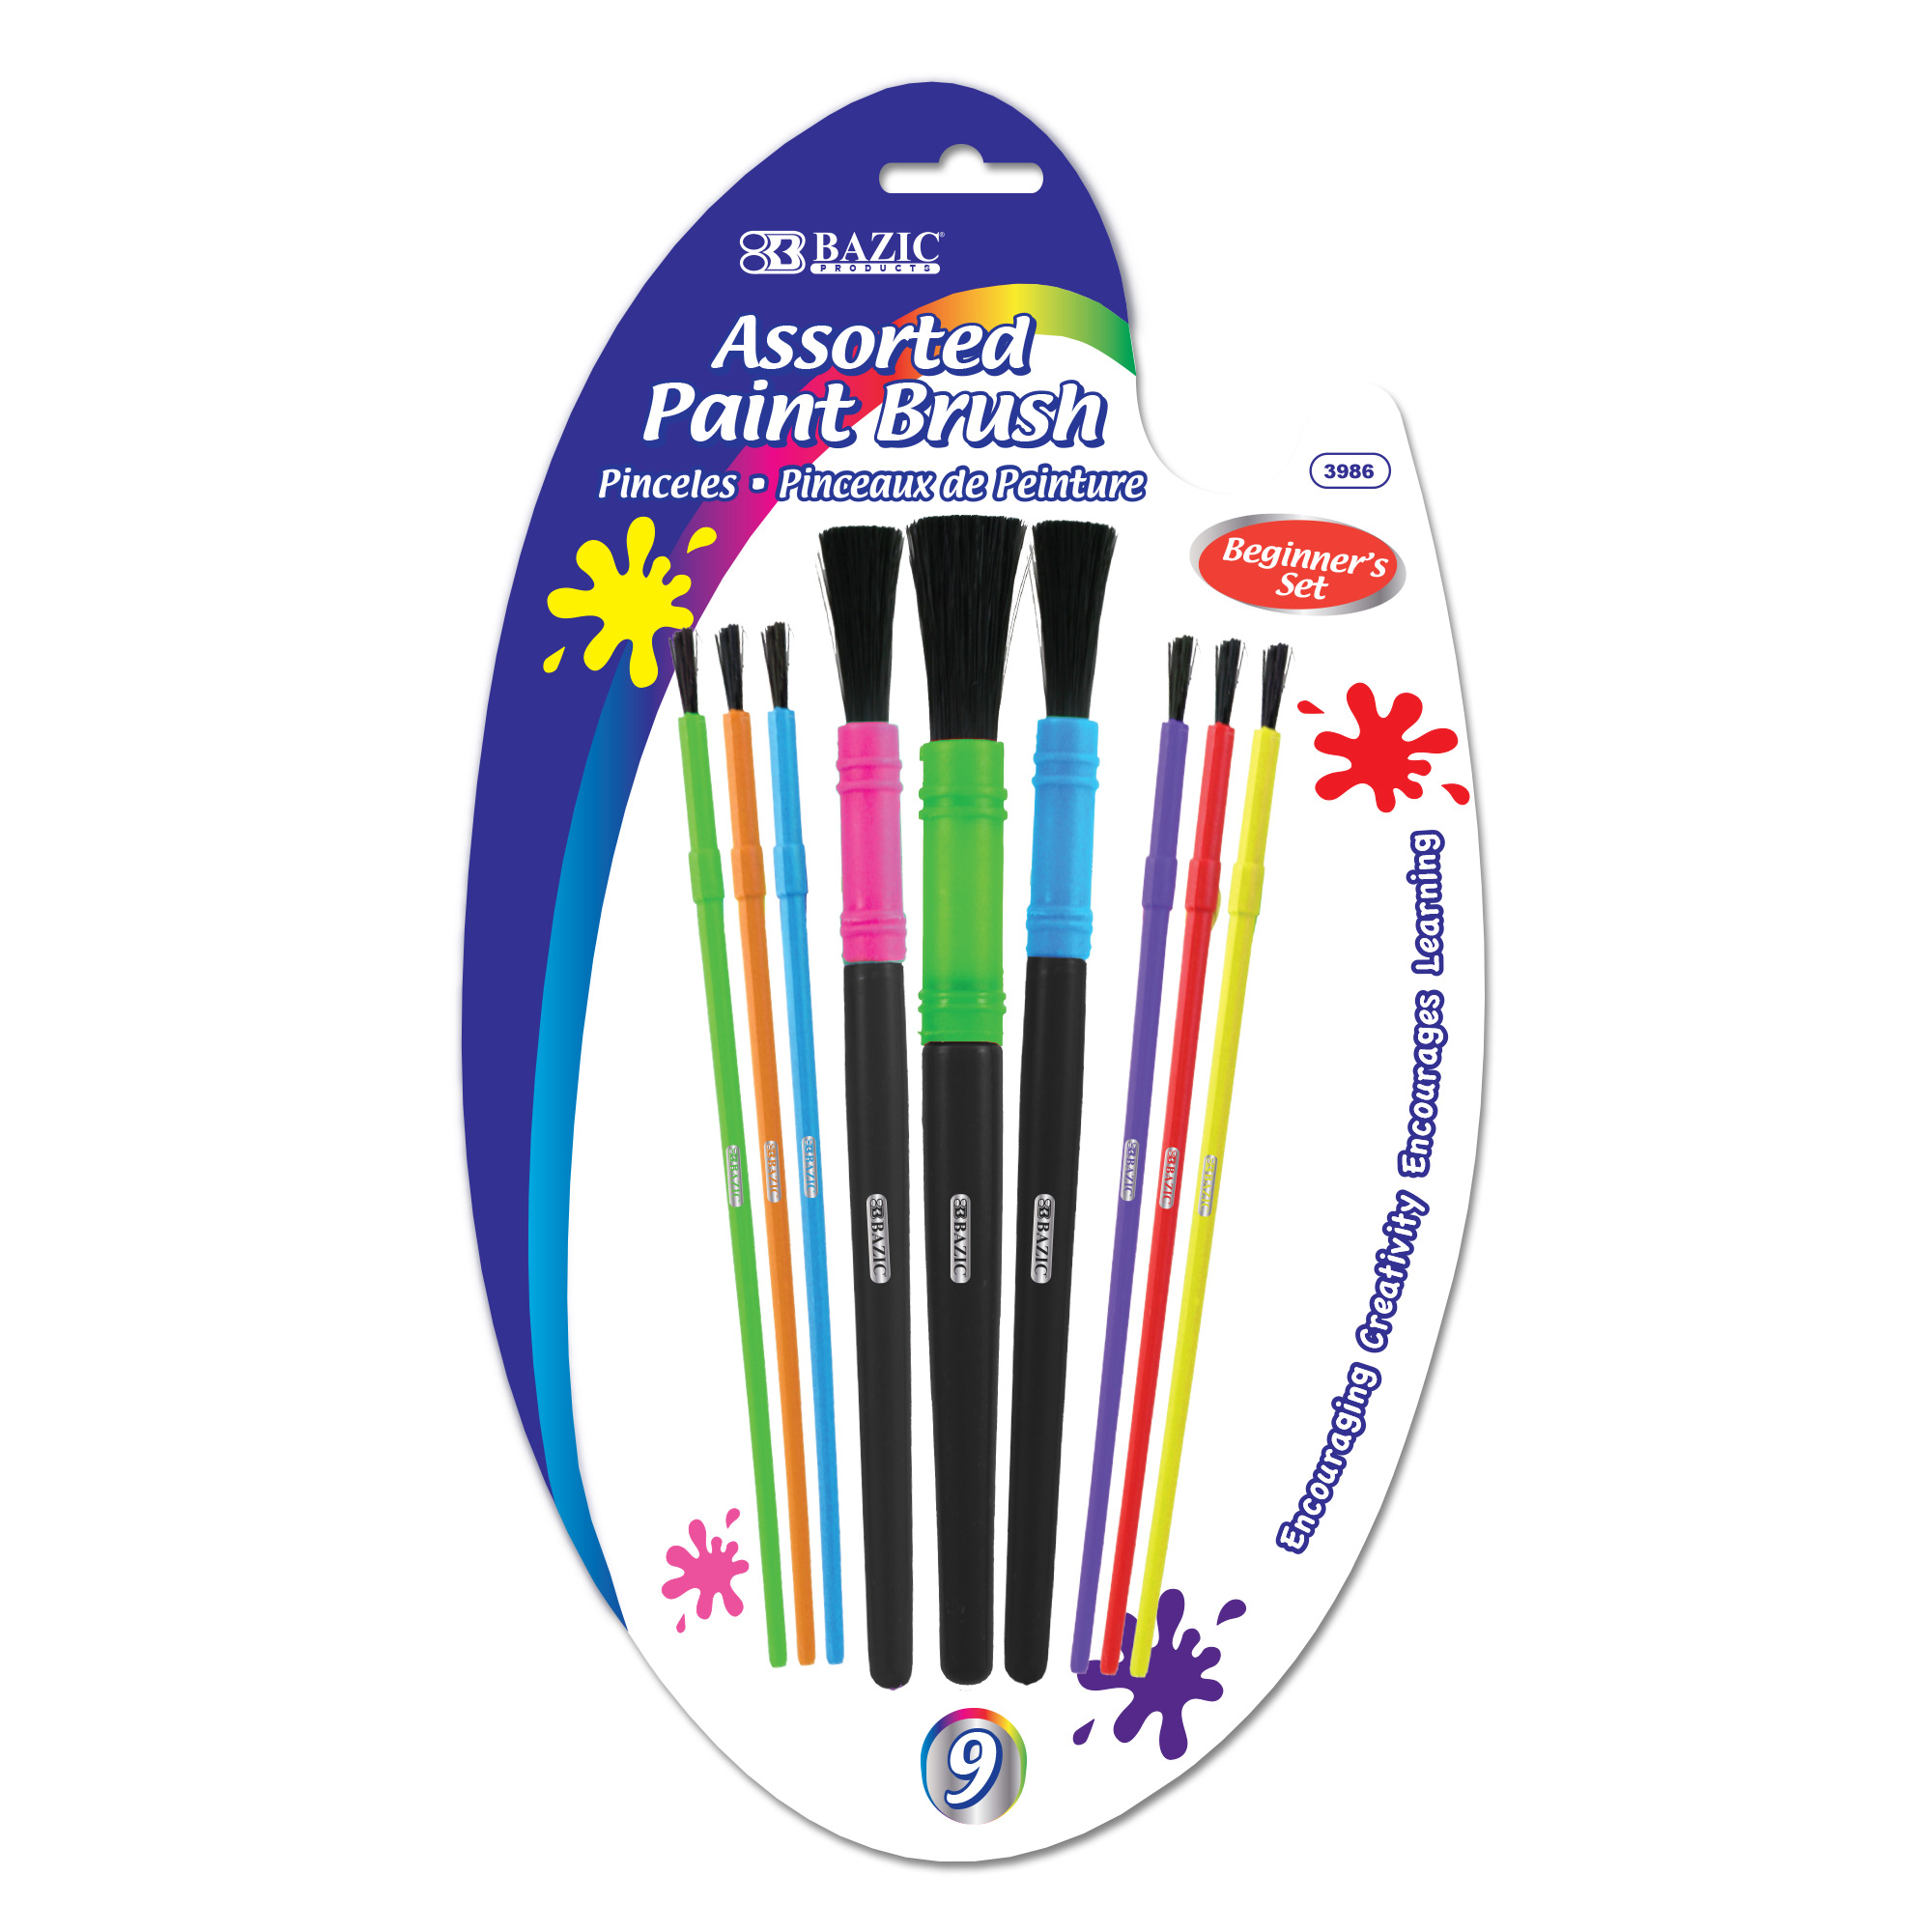 20pcs Paint Brushes Kids Paint Brushes Children Paint Brushes Set